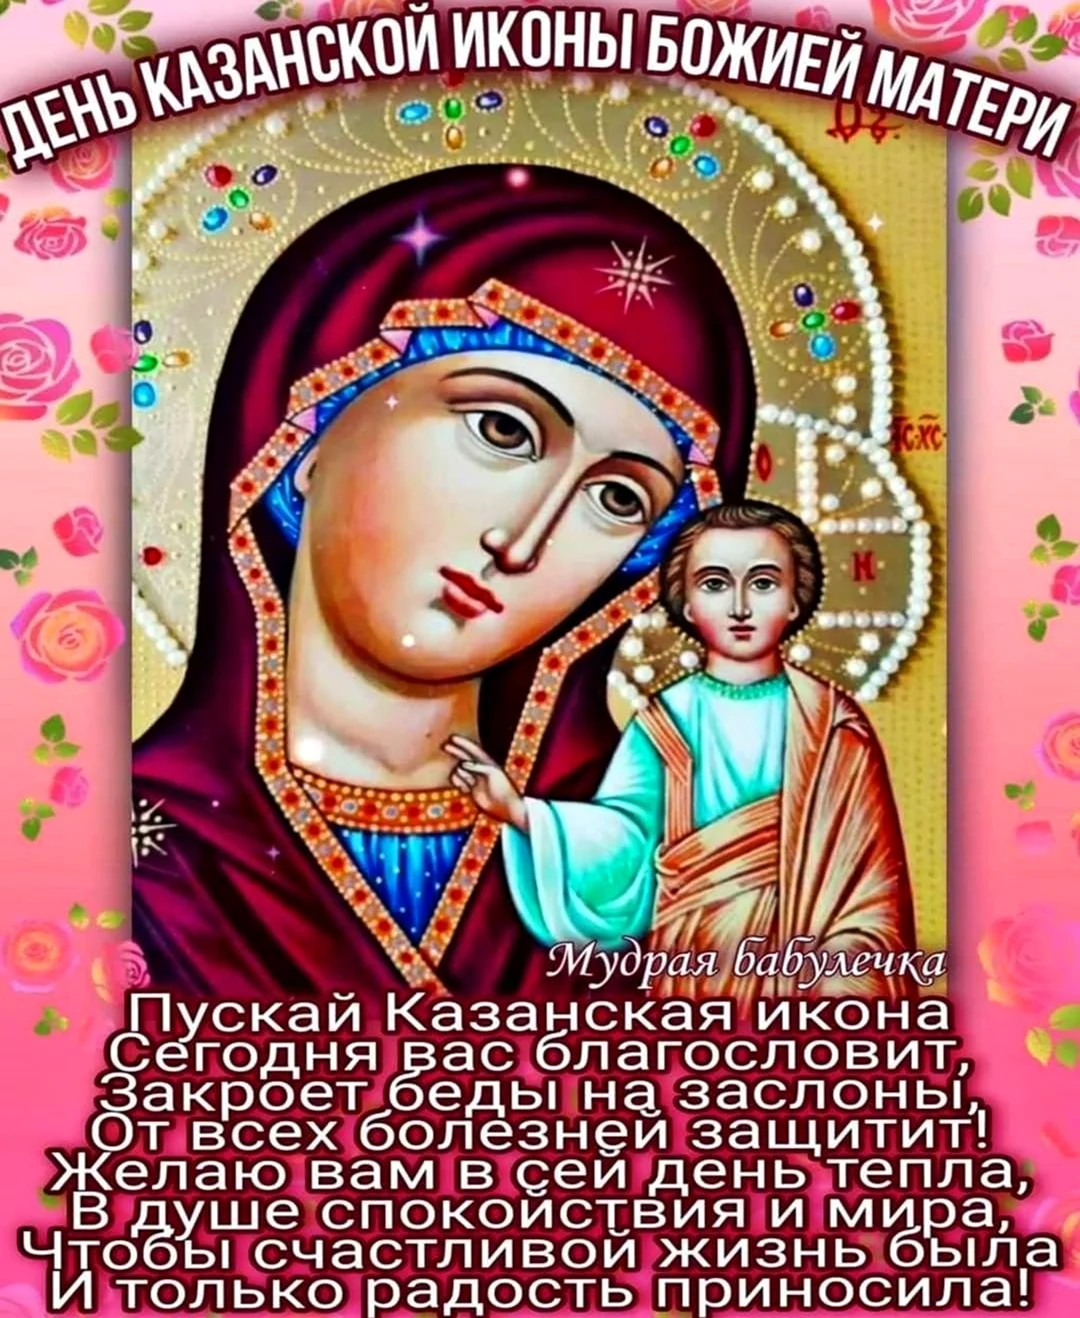 Казанская икона Божией матери праздник 2021. Открытка, картинка с поздравлением, с праздником